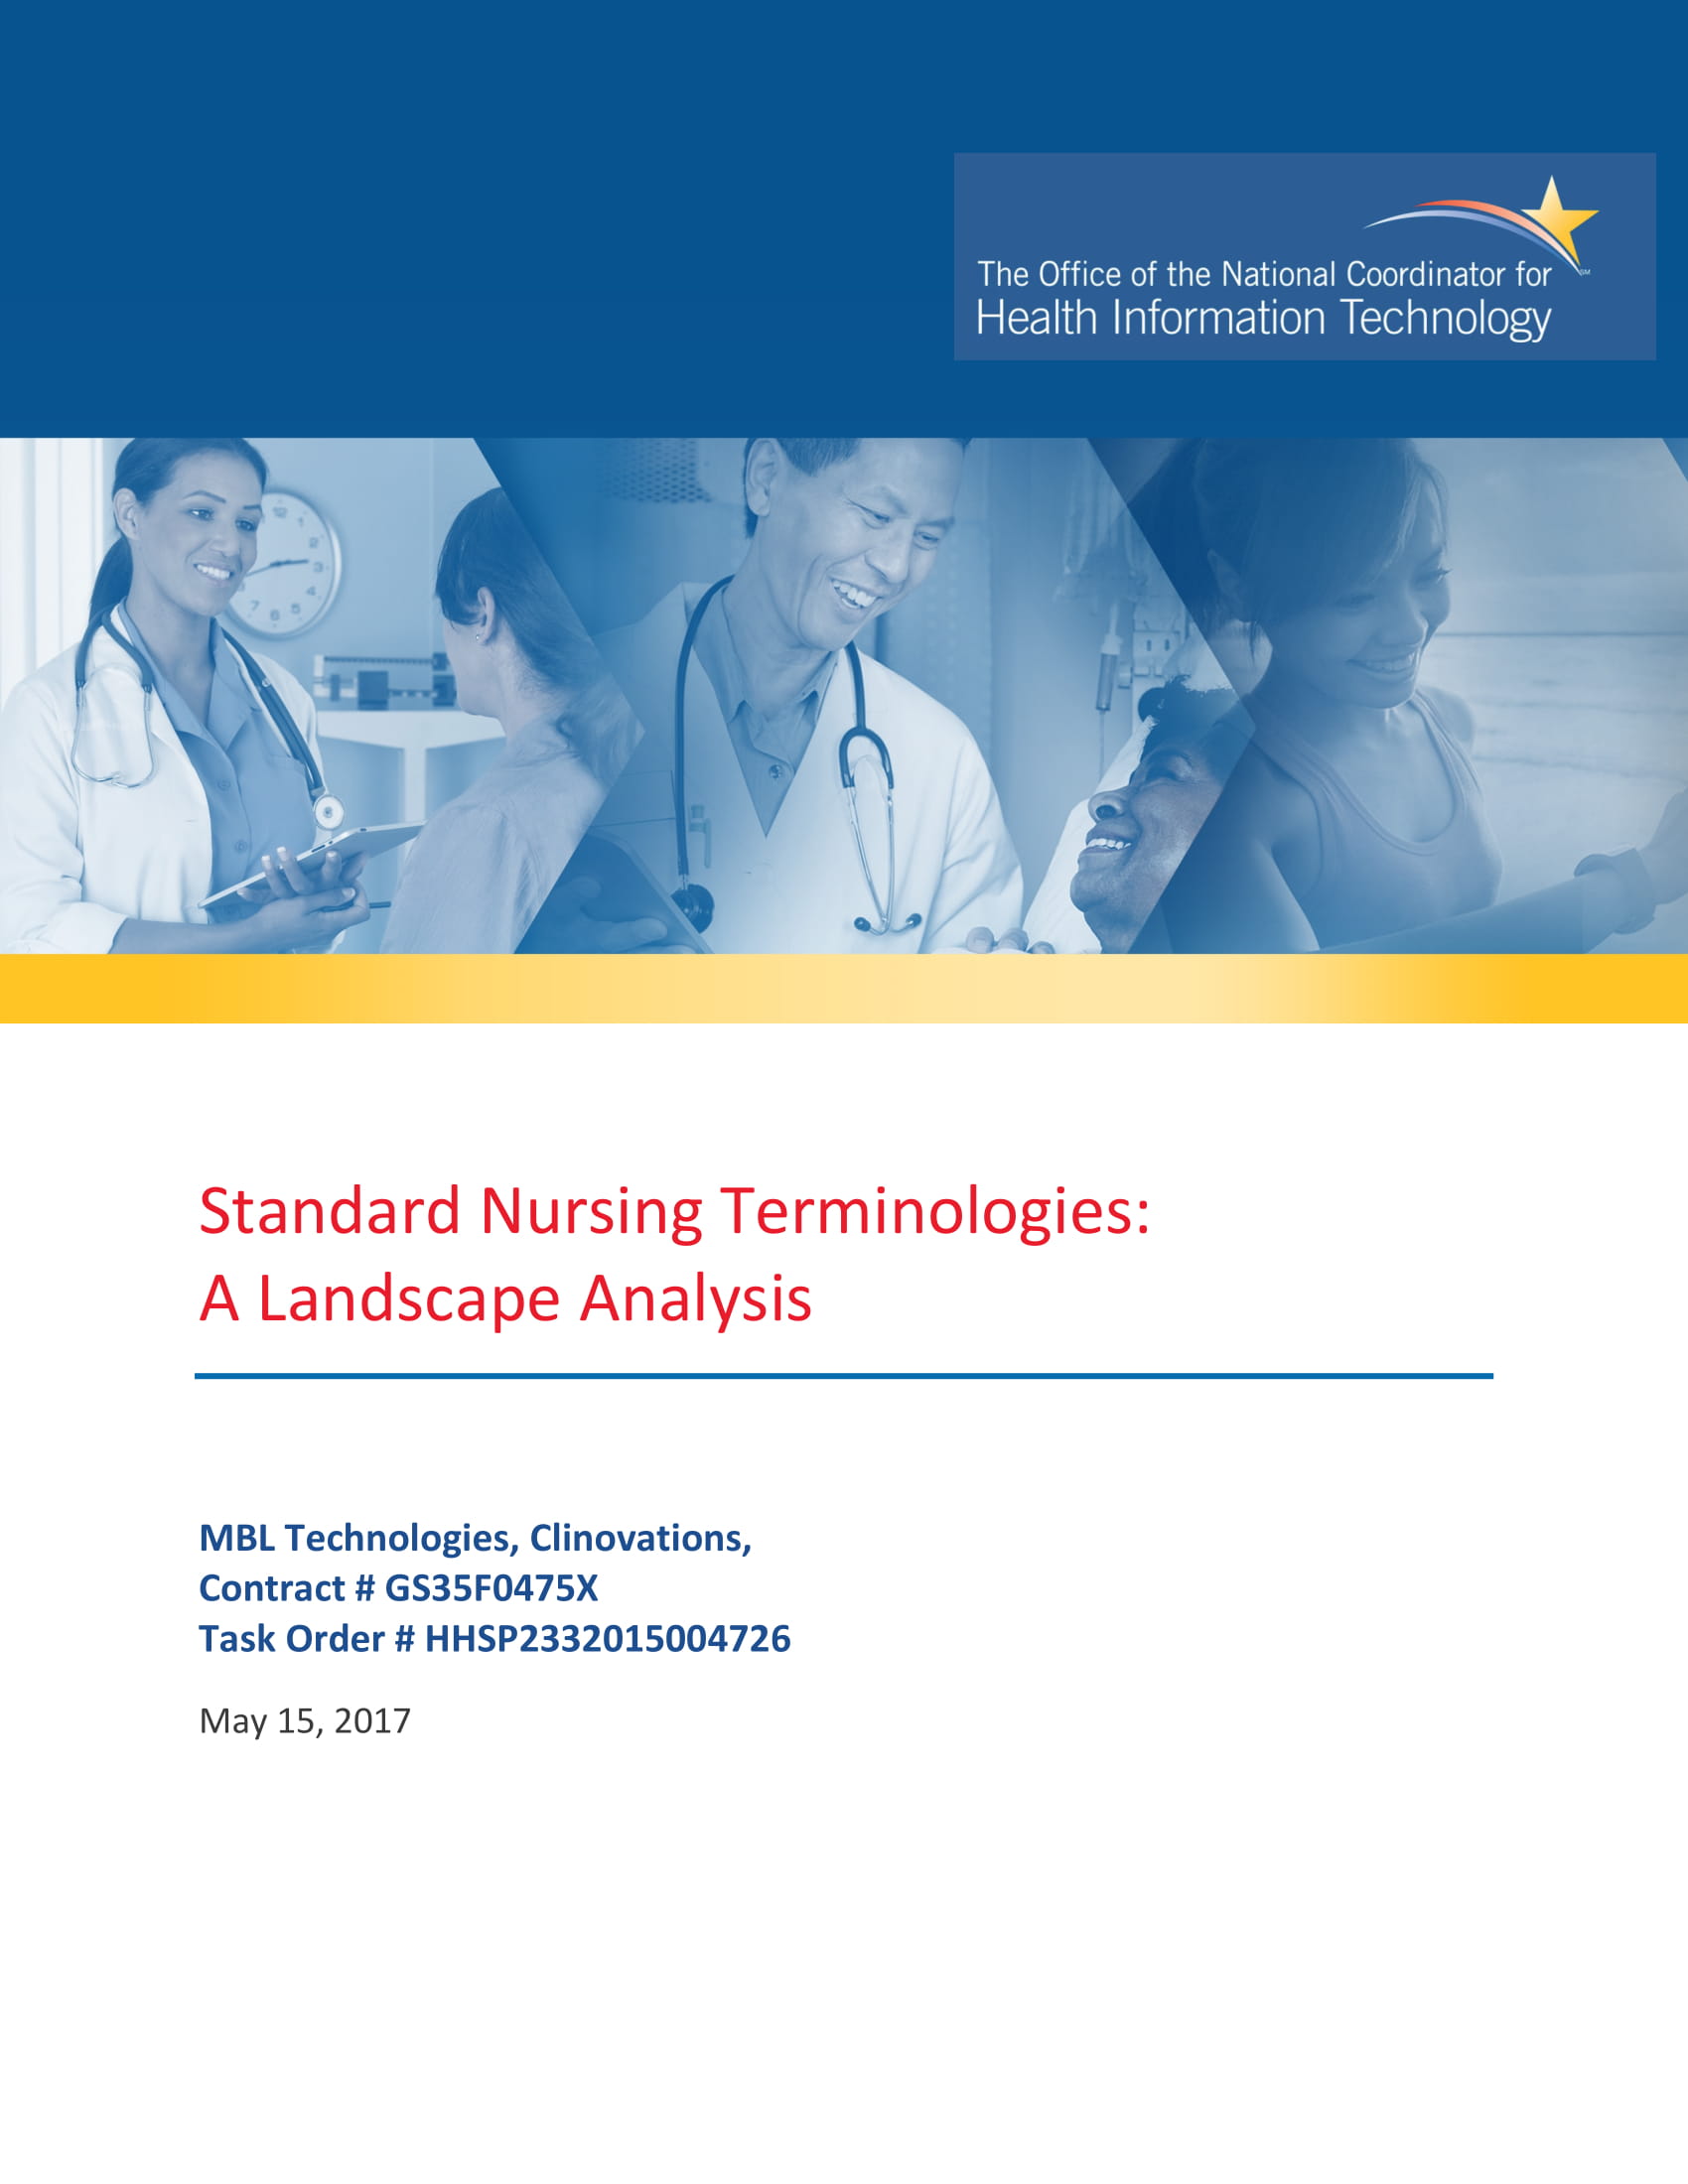 standard nursing terminologies analysis example